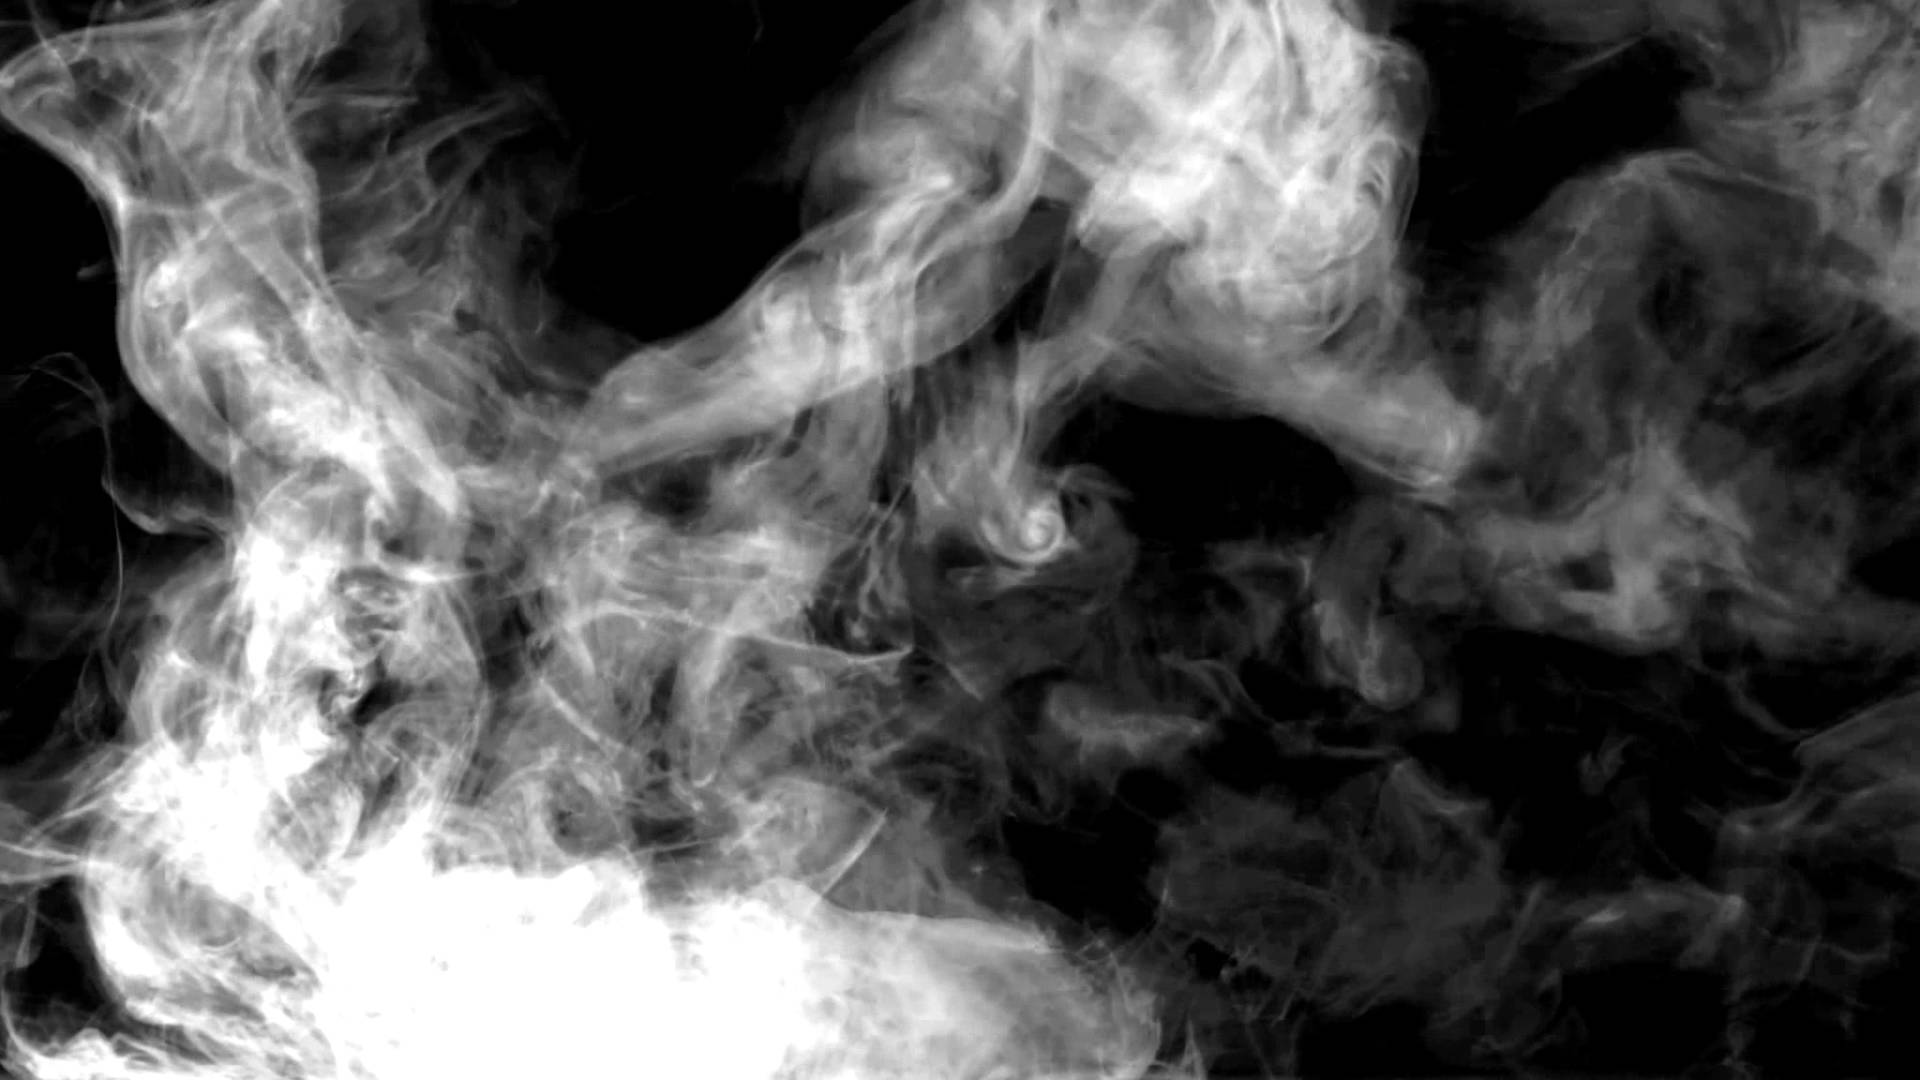 Smoke Background